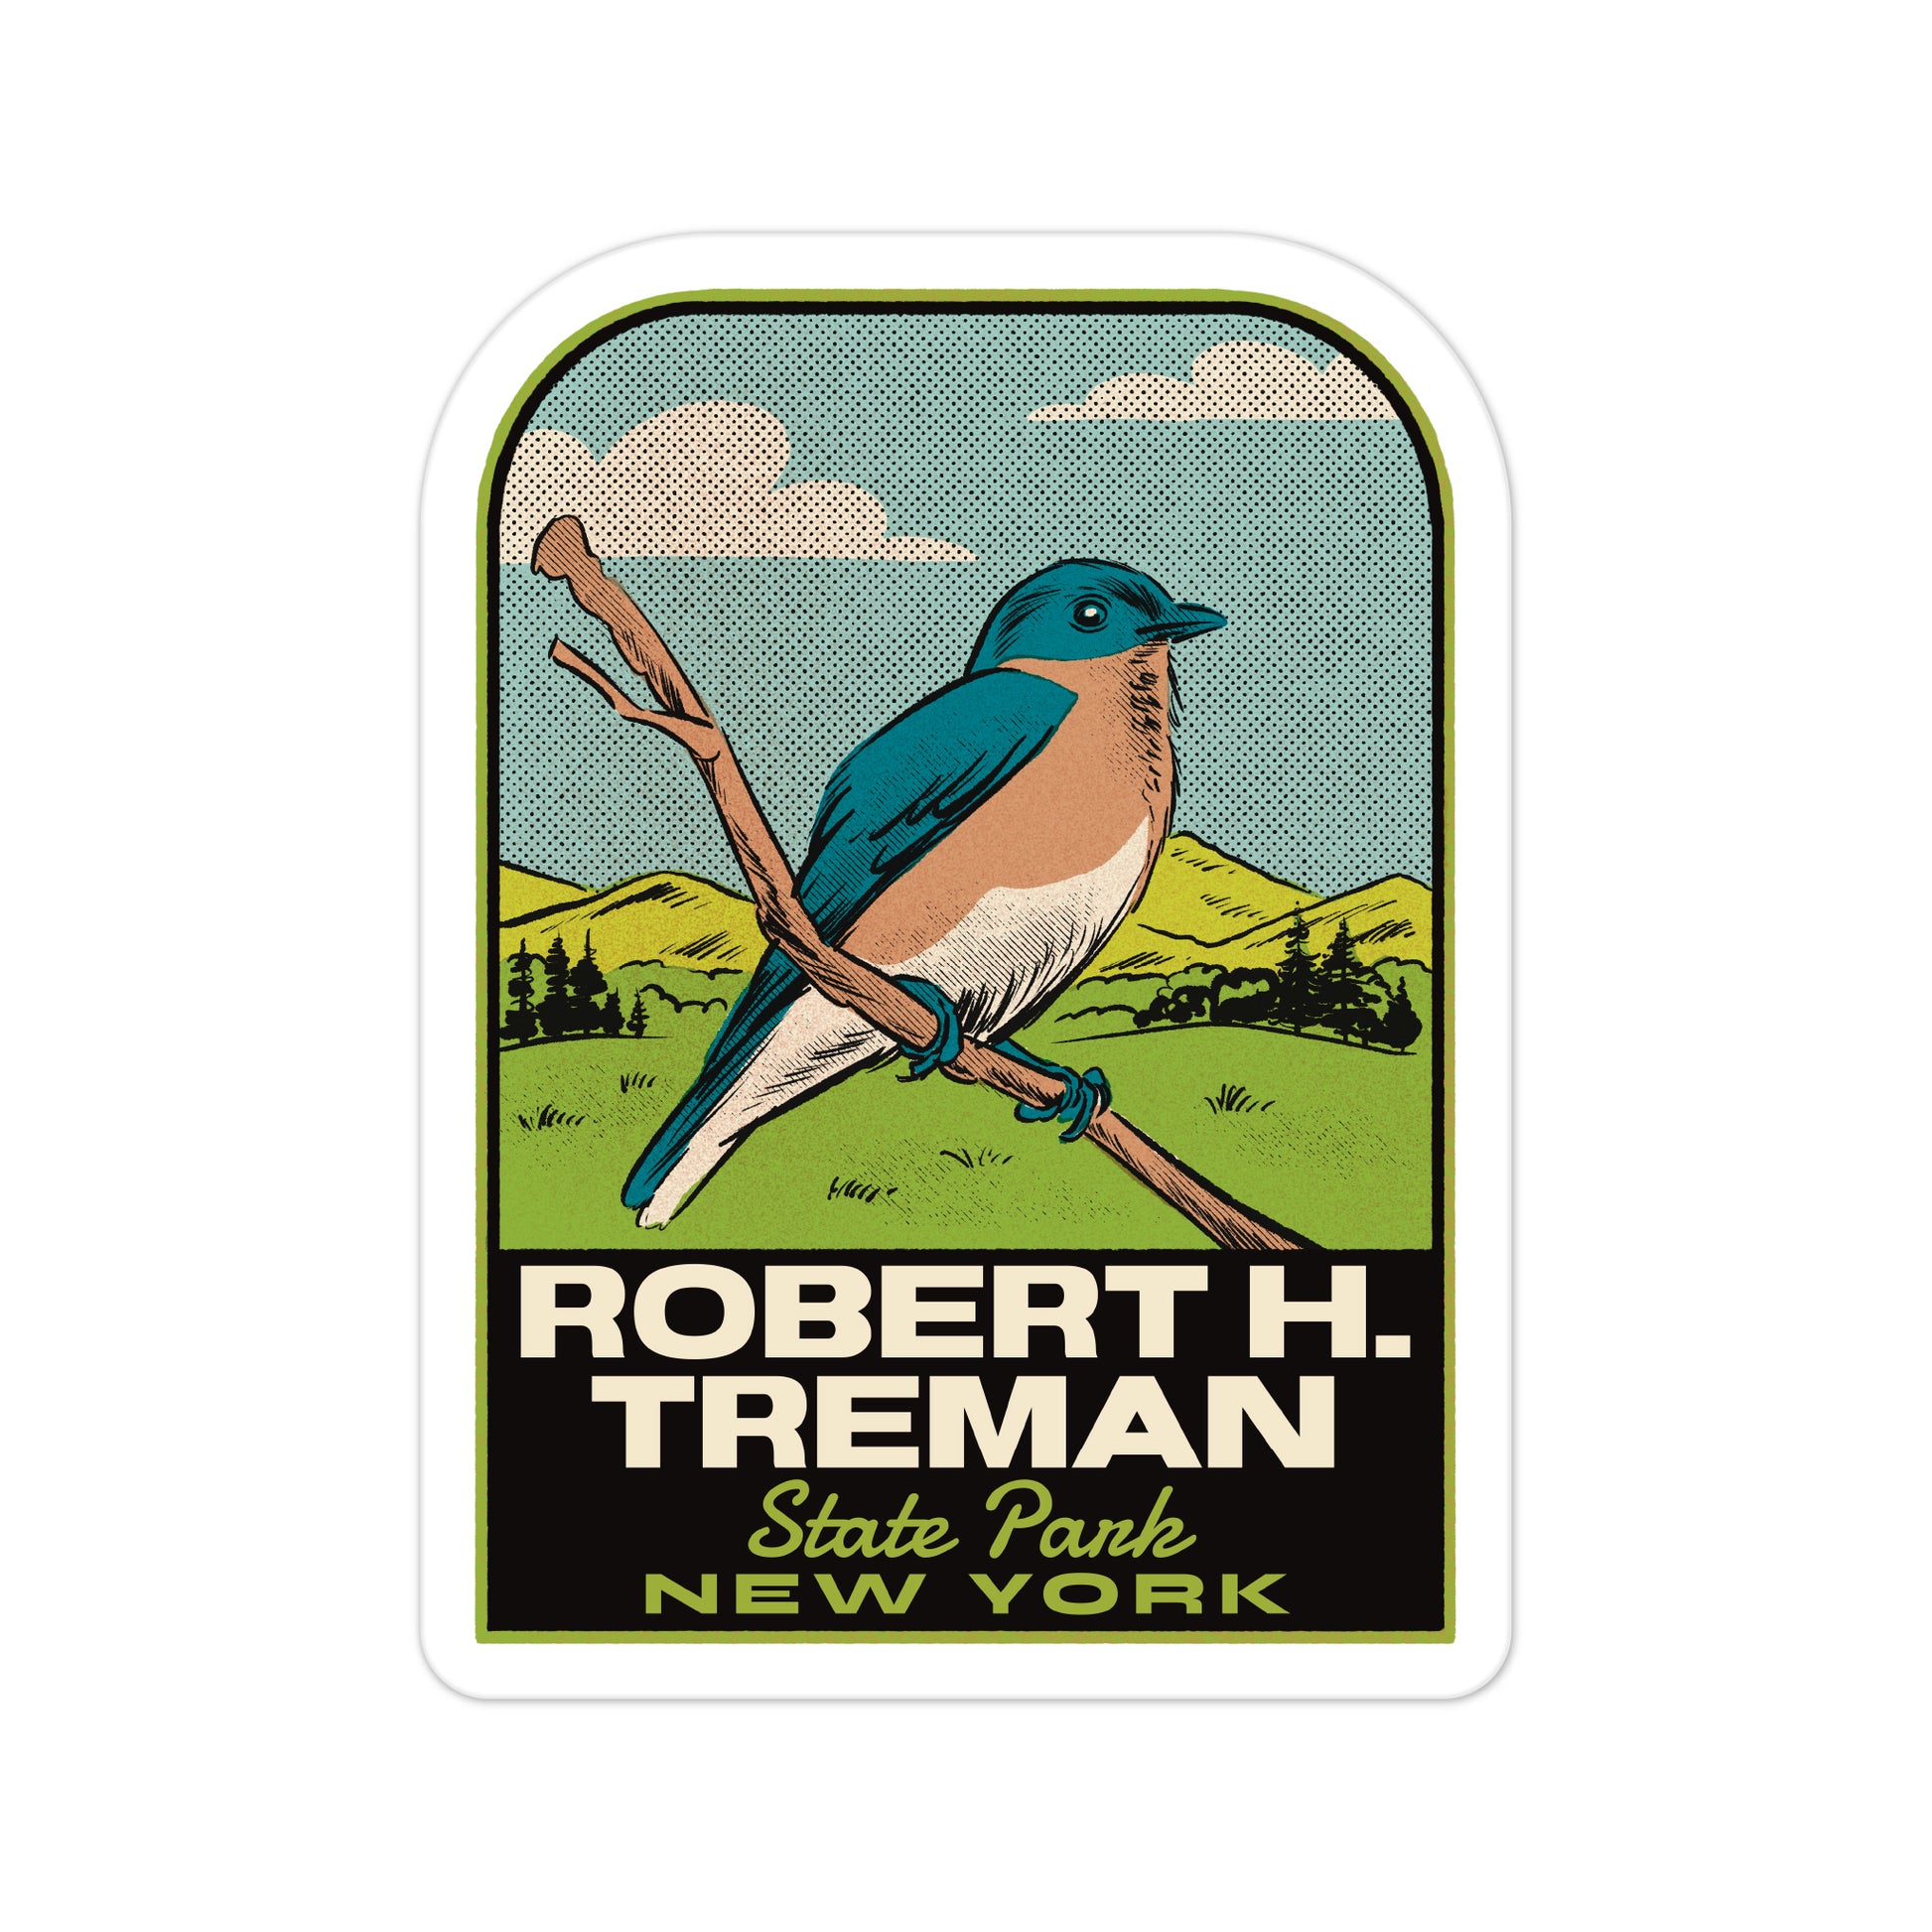 A sticker of Robert H Treman State Park